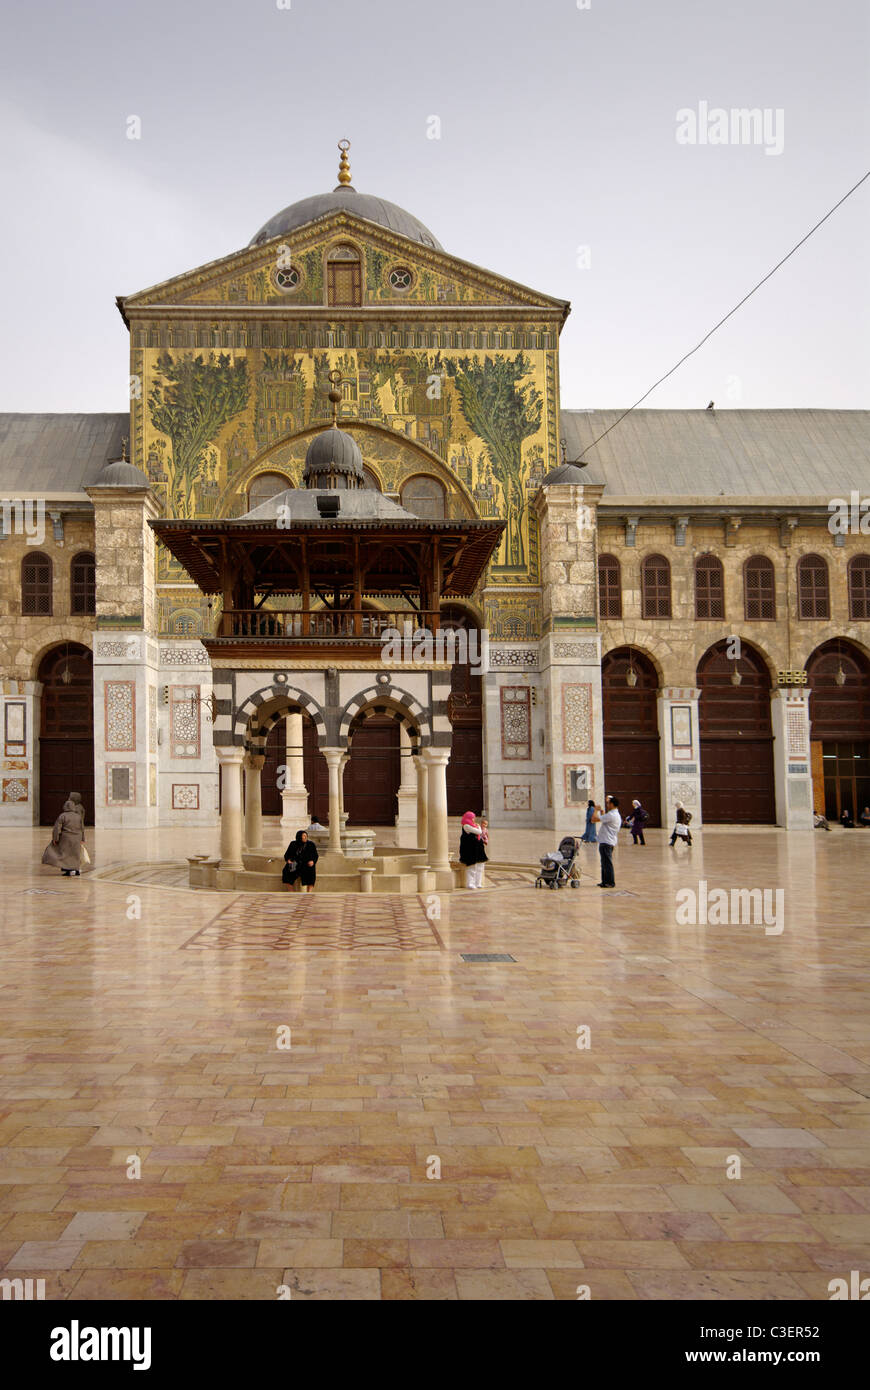 Courtyard, Great Umayyad Mosque, Damascus, Syria Stock Photo